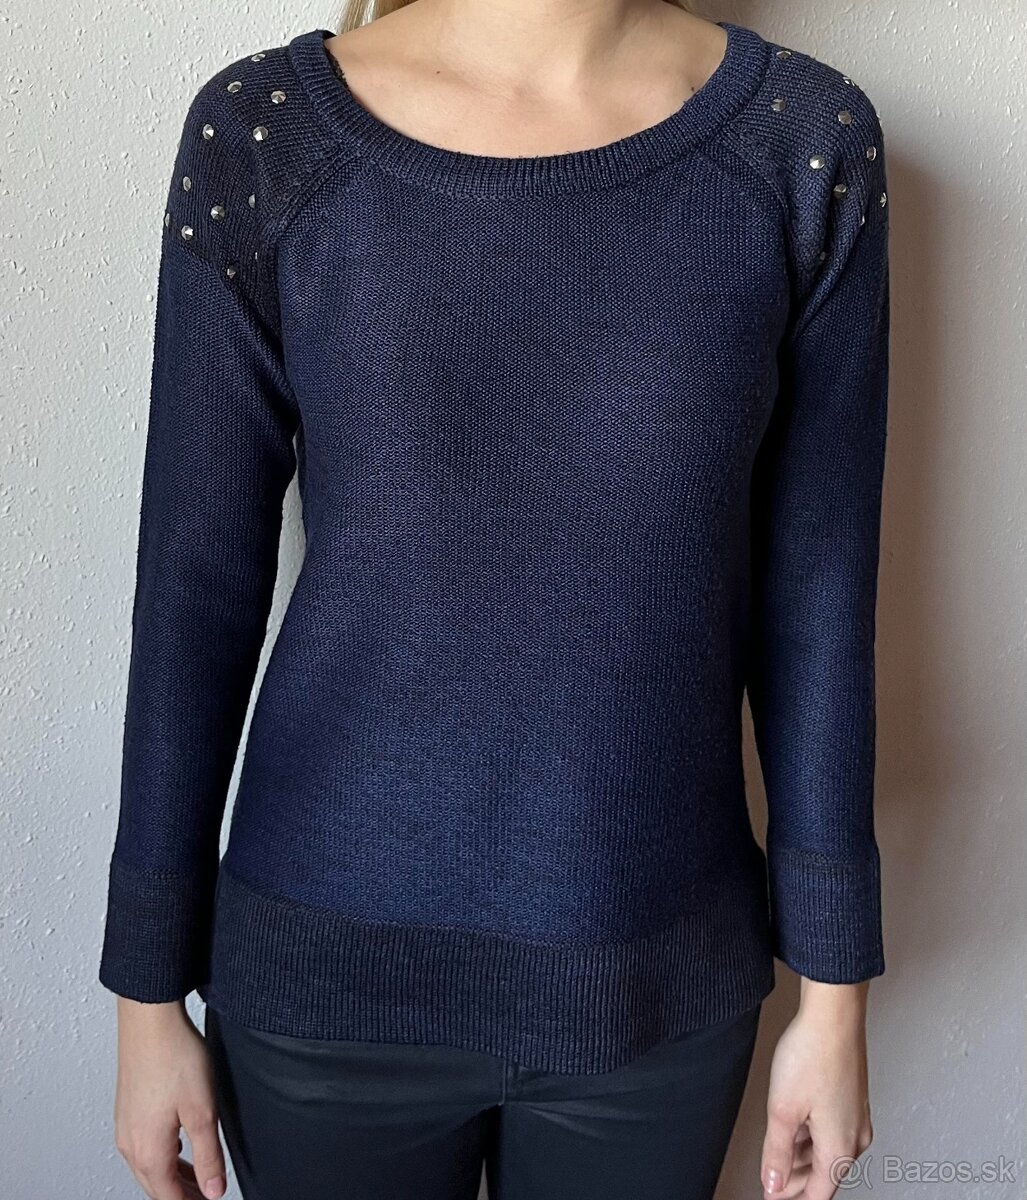 Dámsky tmavomodrý sveter so striebornými flitrami, veľkosť S